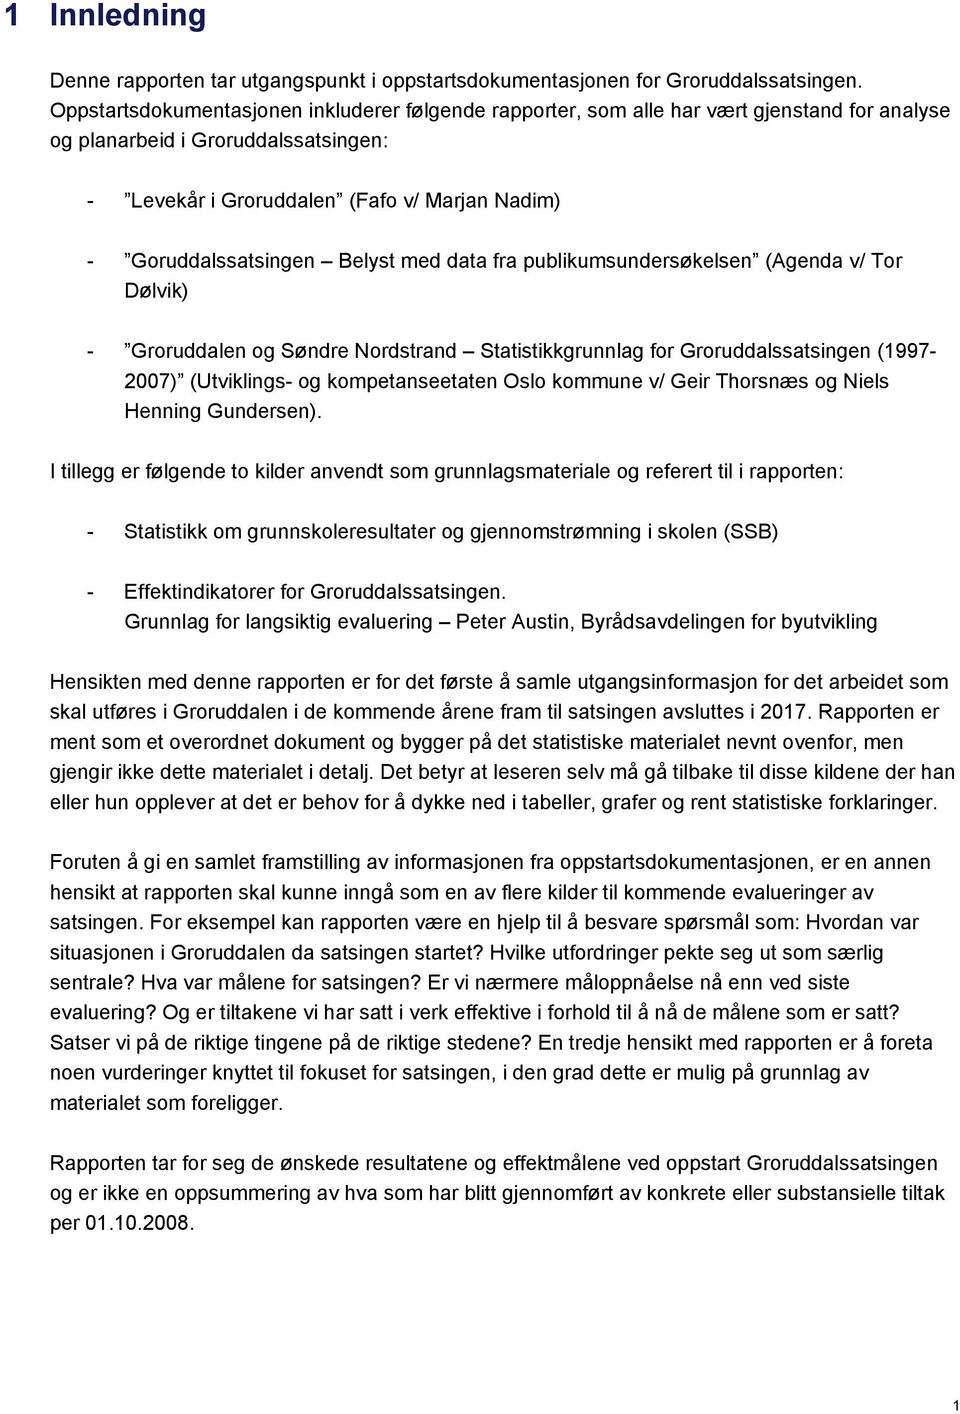 Goruddalssatsingen Belyst med data fra publikumsundersøkelsen (Agenda v/ Tor Dølvik) - Groruddalen og Søndre Nordstrand Statistikkgrunnlag for Groruddalssatsingen (1997-2007) (Utviklings- og